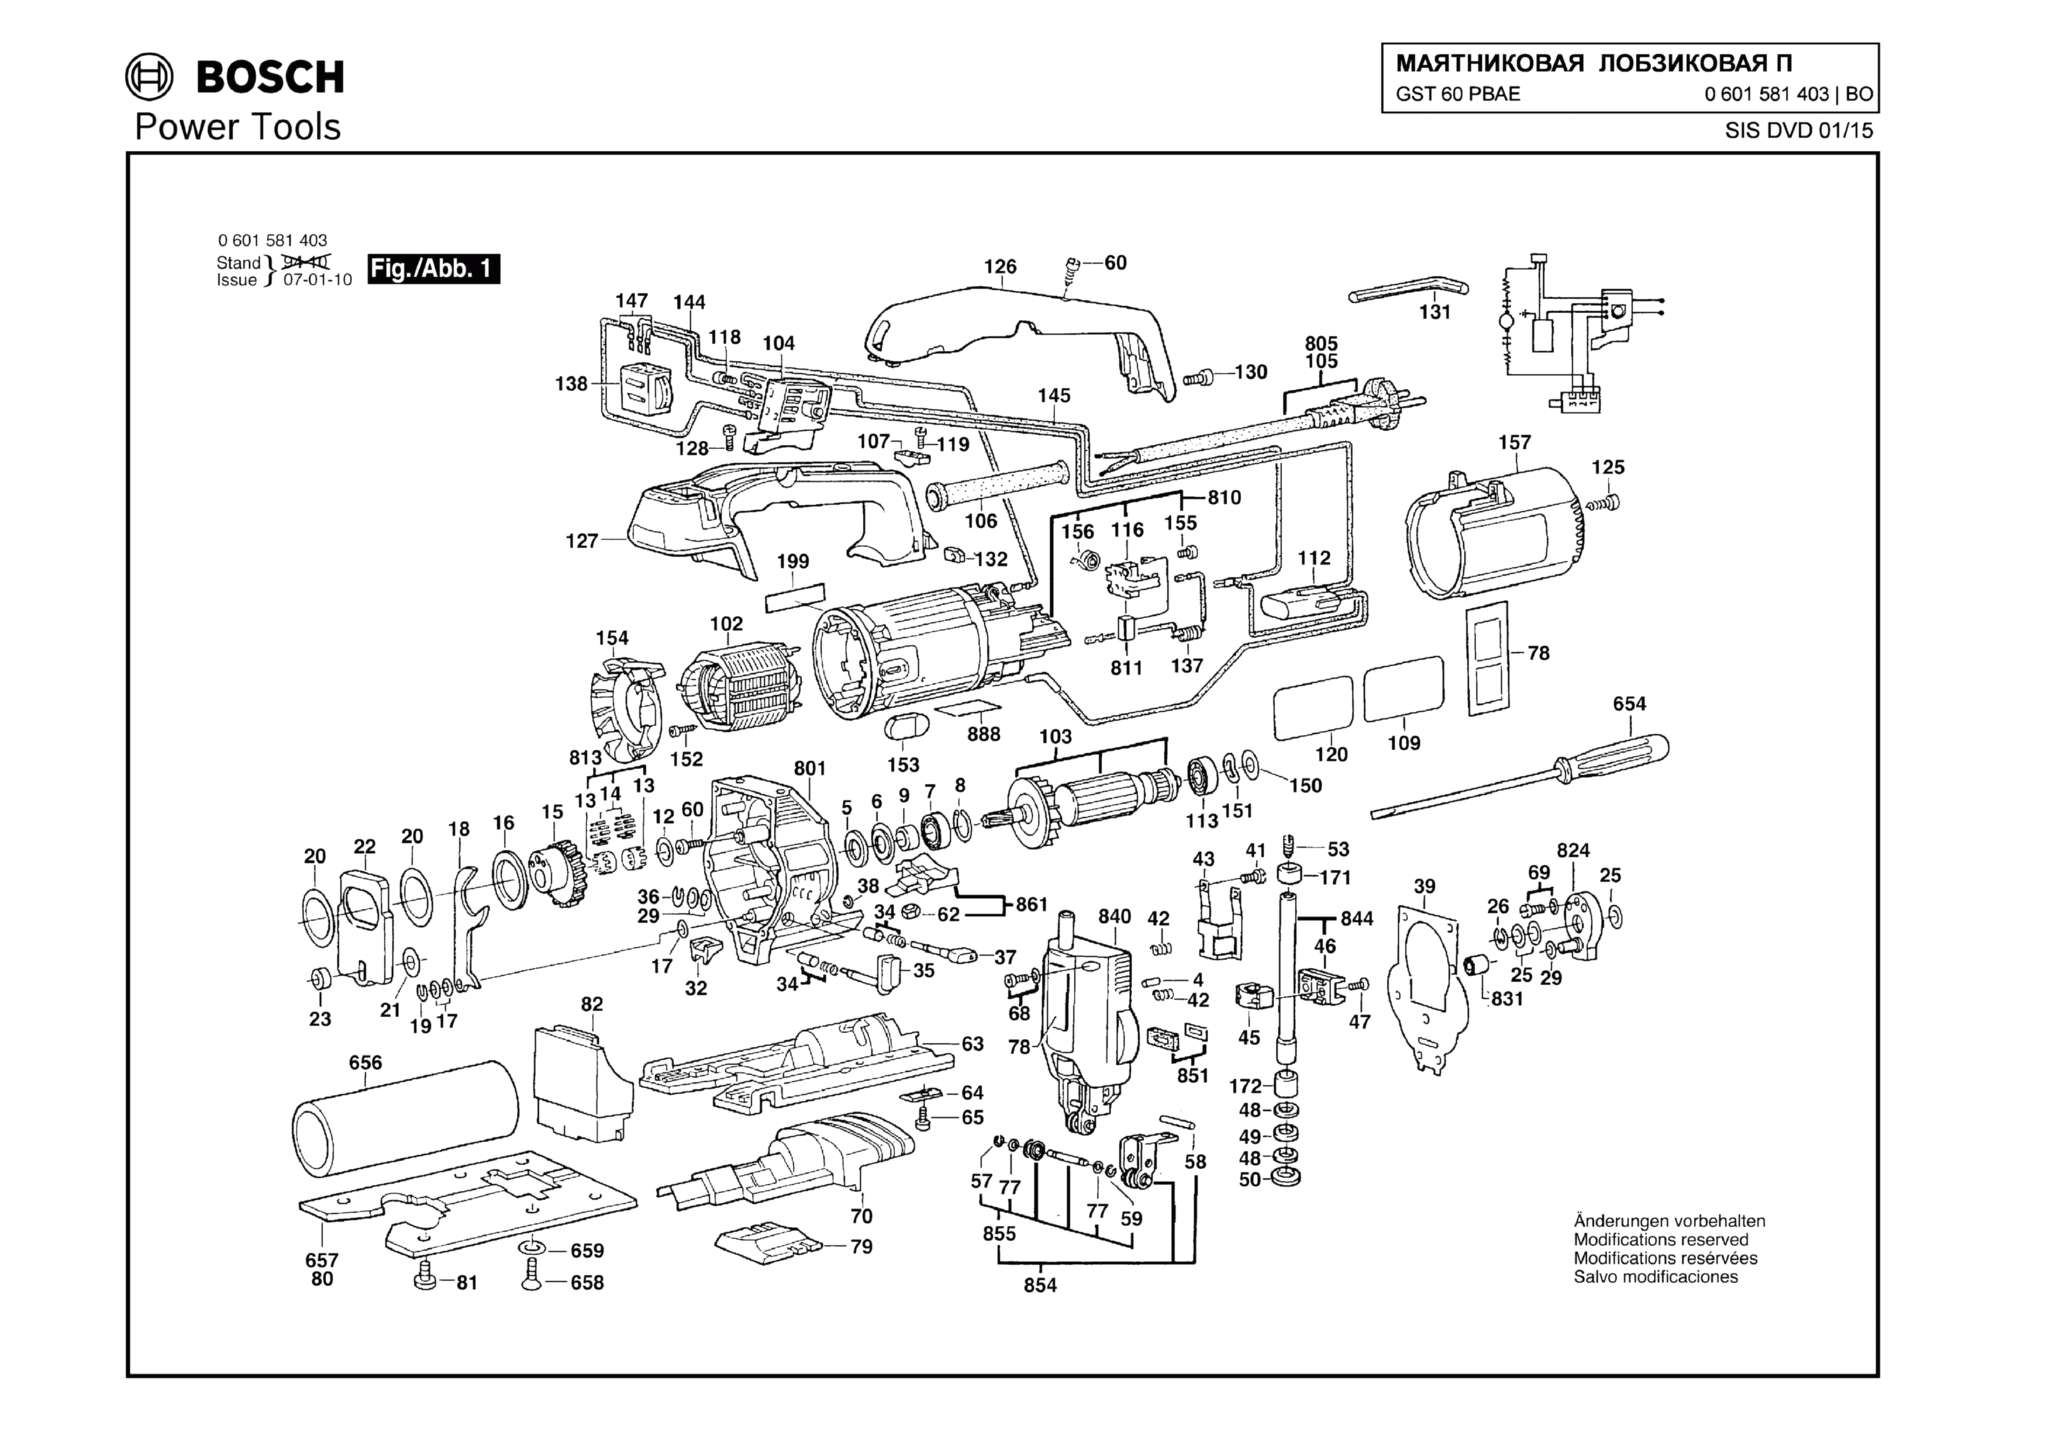 Запчасти, схема и деталировка Bosch GST 60 PBAE (ТИП 0601581403)